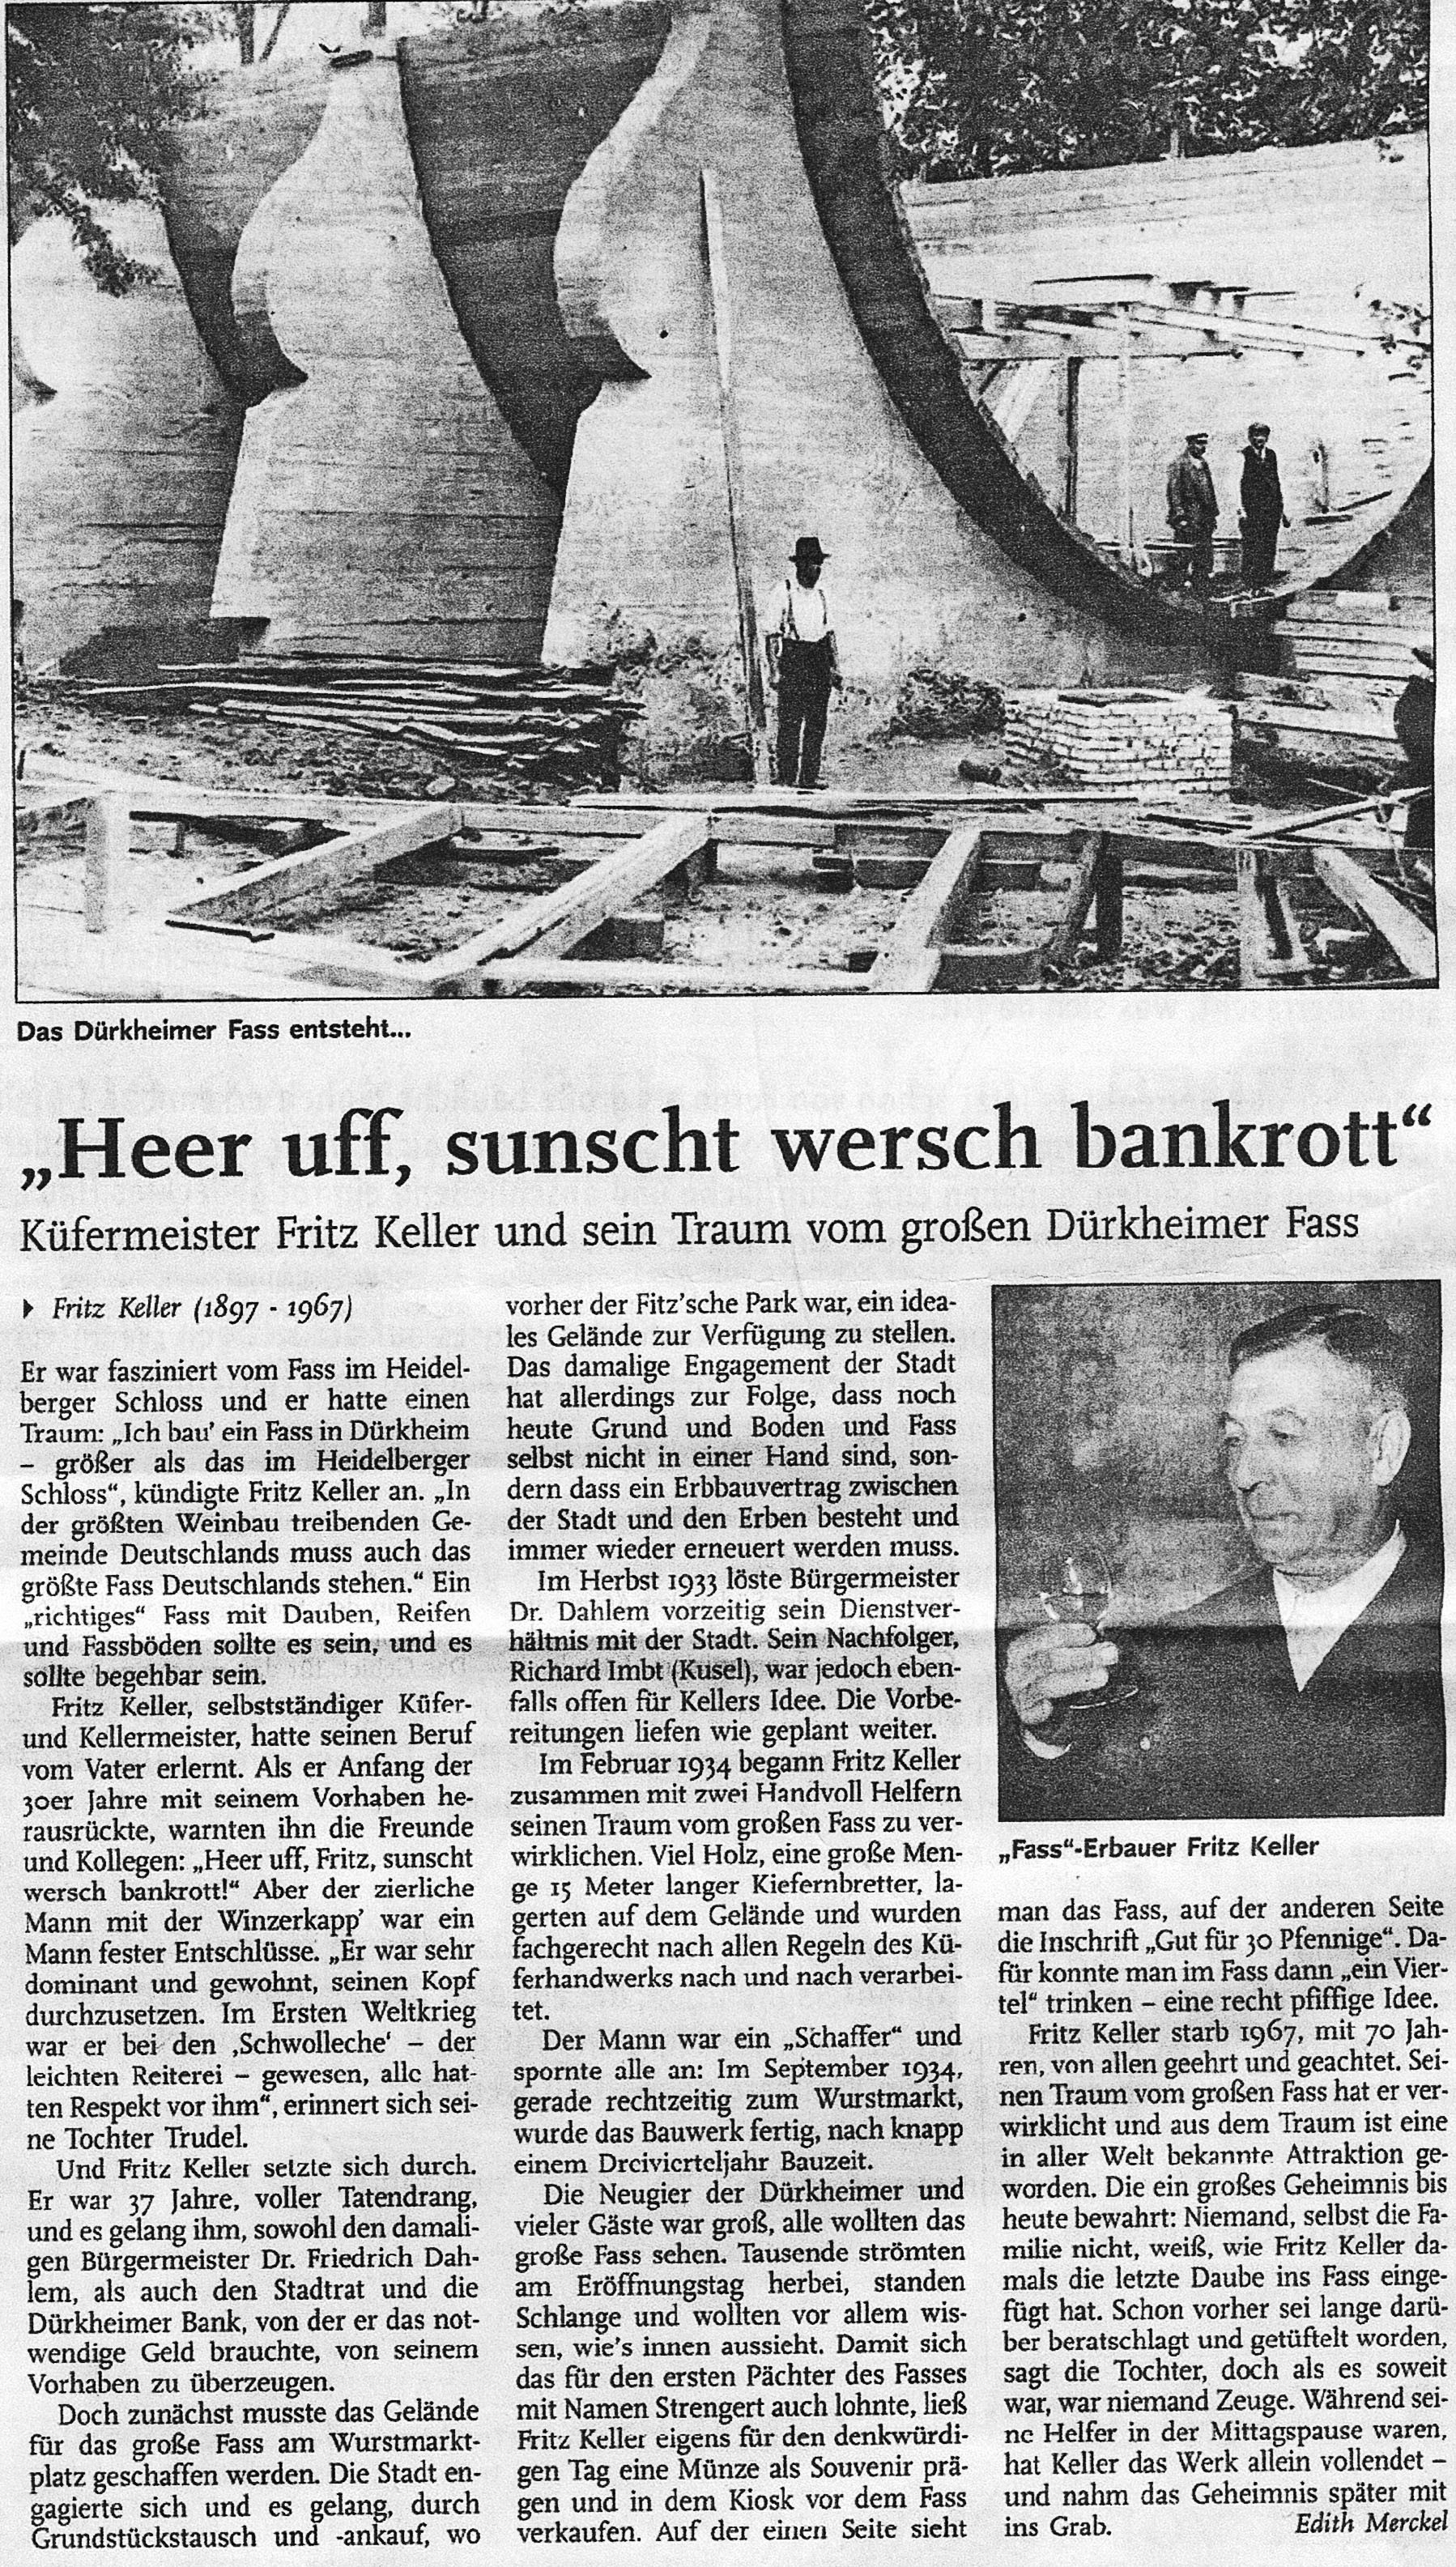 Foto-Sammlung Adolf Krapp, Ordner 16: Riesenfass, 2. Hälfte 20. Jahrhundert (Museumsgesellschaft Bad Dürkheim e.V. CC BY-NC-SA)